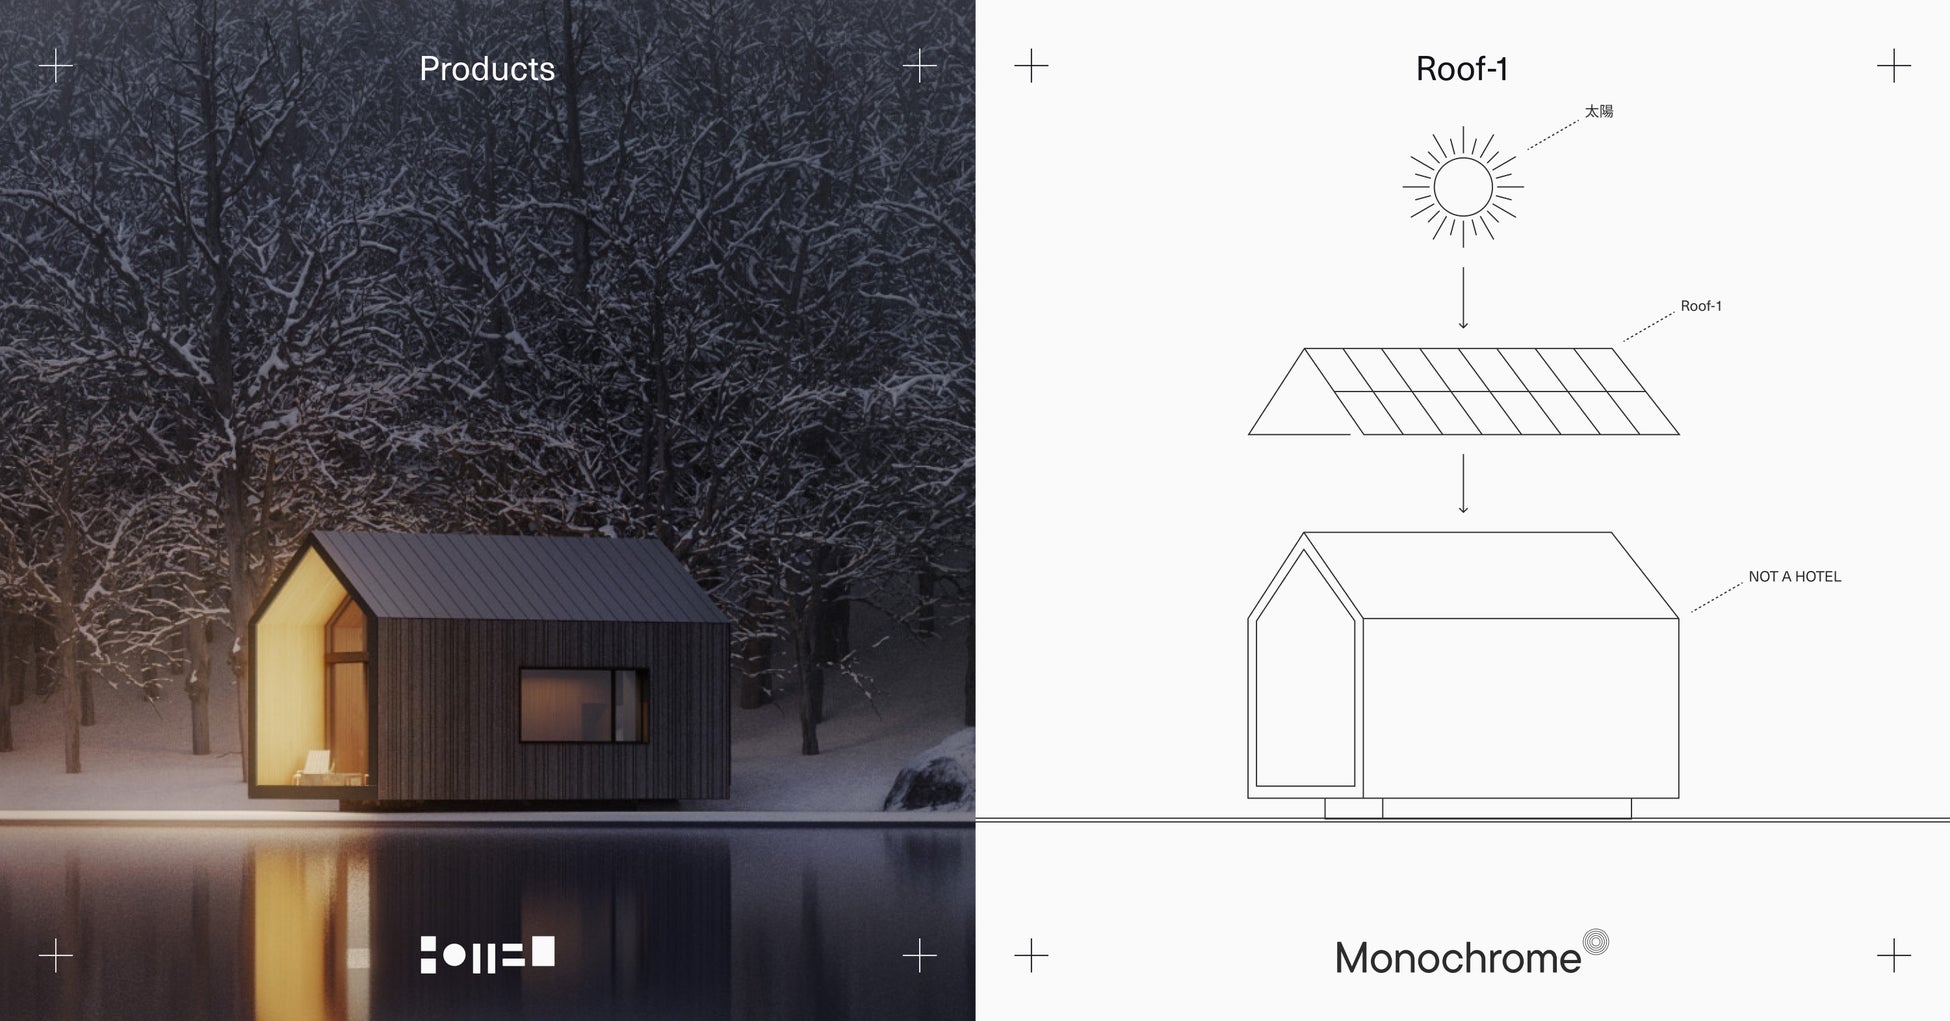 クリーンなエネルギーをつくる未来の屋根”Roof-1”を開発する「モノクローム」が、“ホテルにもできる別荘”NOT A HOTELと提携。オフグリッドも可能に。のサブ画像1_エネルギーを作る屋根Roof-1xNOT A HOTEL PRODUCTSが提携